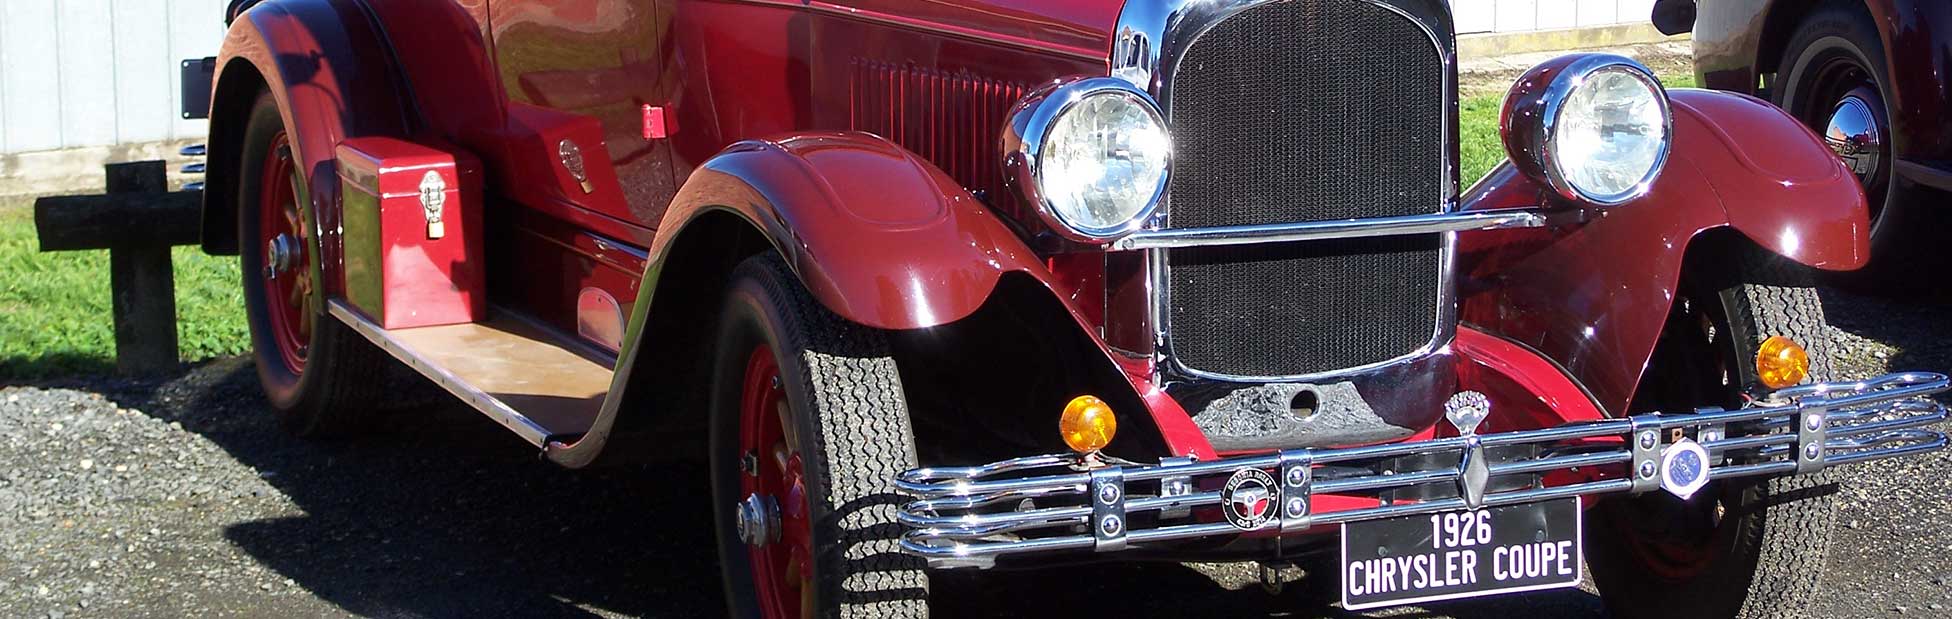 Red vintage car on display